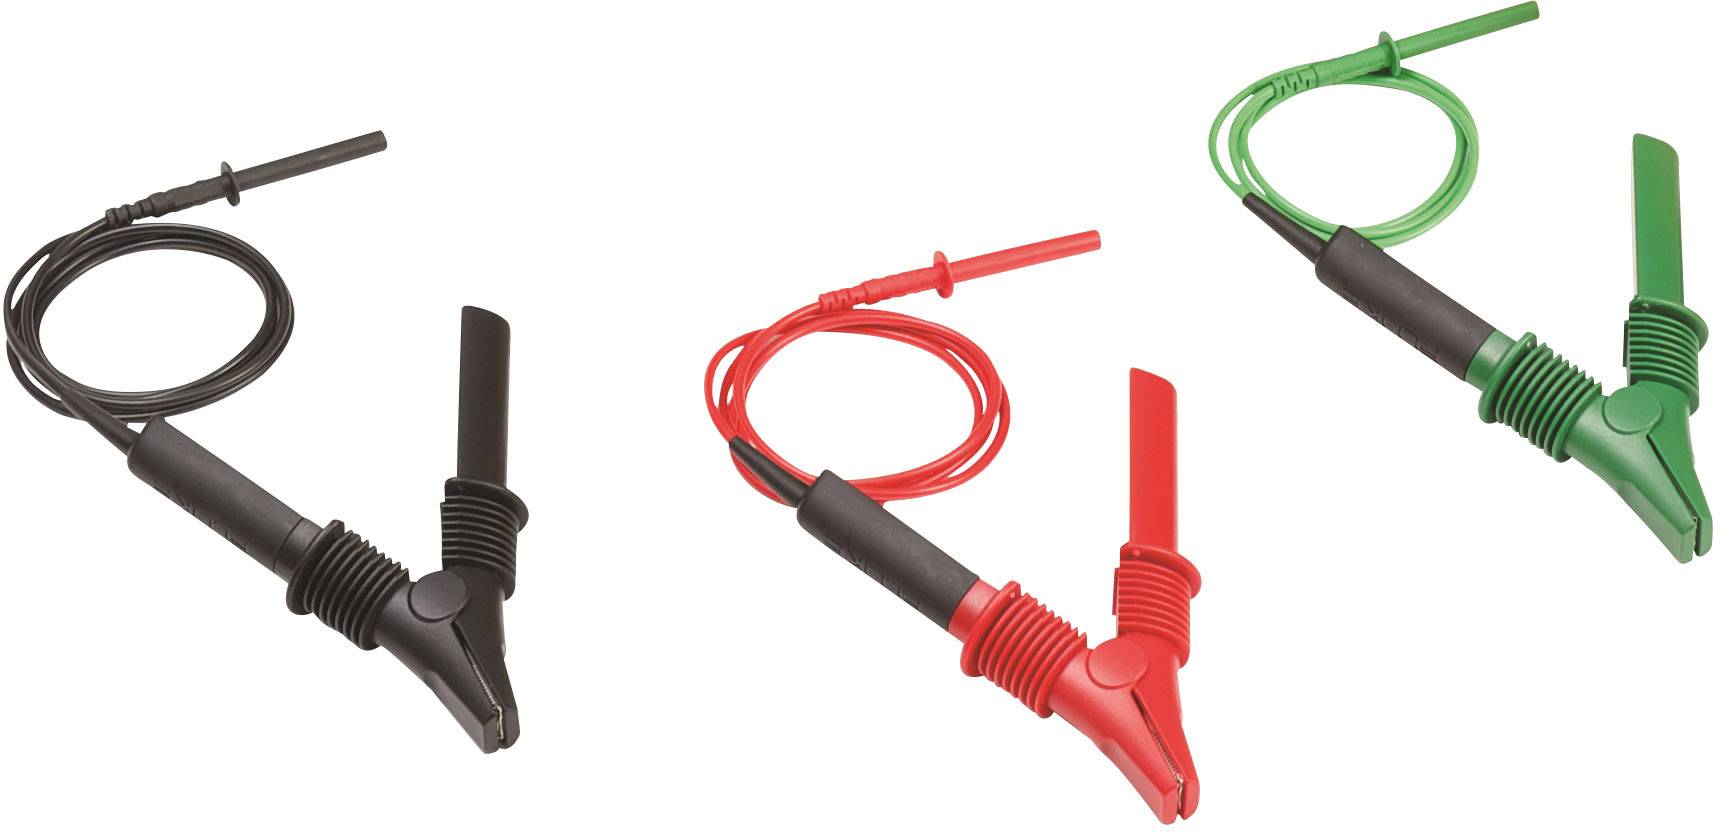 FLUKE Sicherheits-Messleitungs-Set [ Krokoklemmen - Lamellenstecker 4 mm] Rot, Schwarz, Grün Fluke T